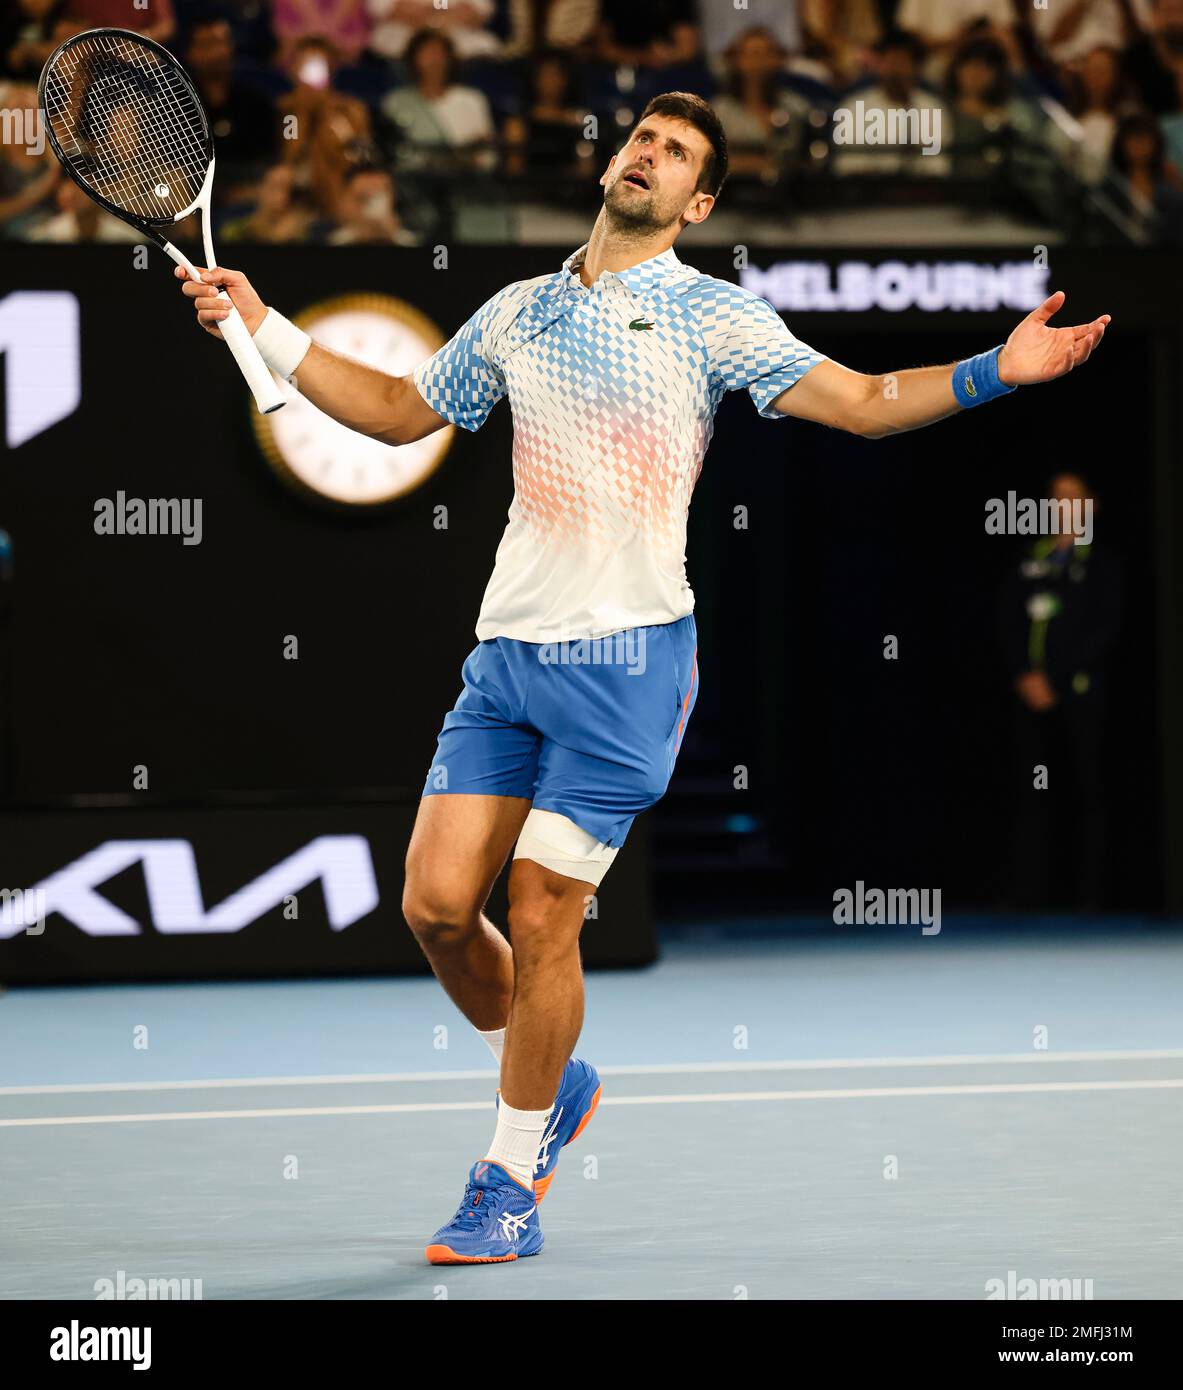 Melbourne, Australie, 25th janvier 2023. Novak Djokovic, de Serbie, est en action au Grand Chelem de tennis australien à Melbourne Park. Crédit photo: Frank Molter/Alamy Live News Banque D'Images